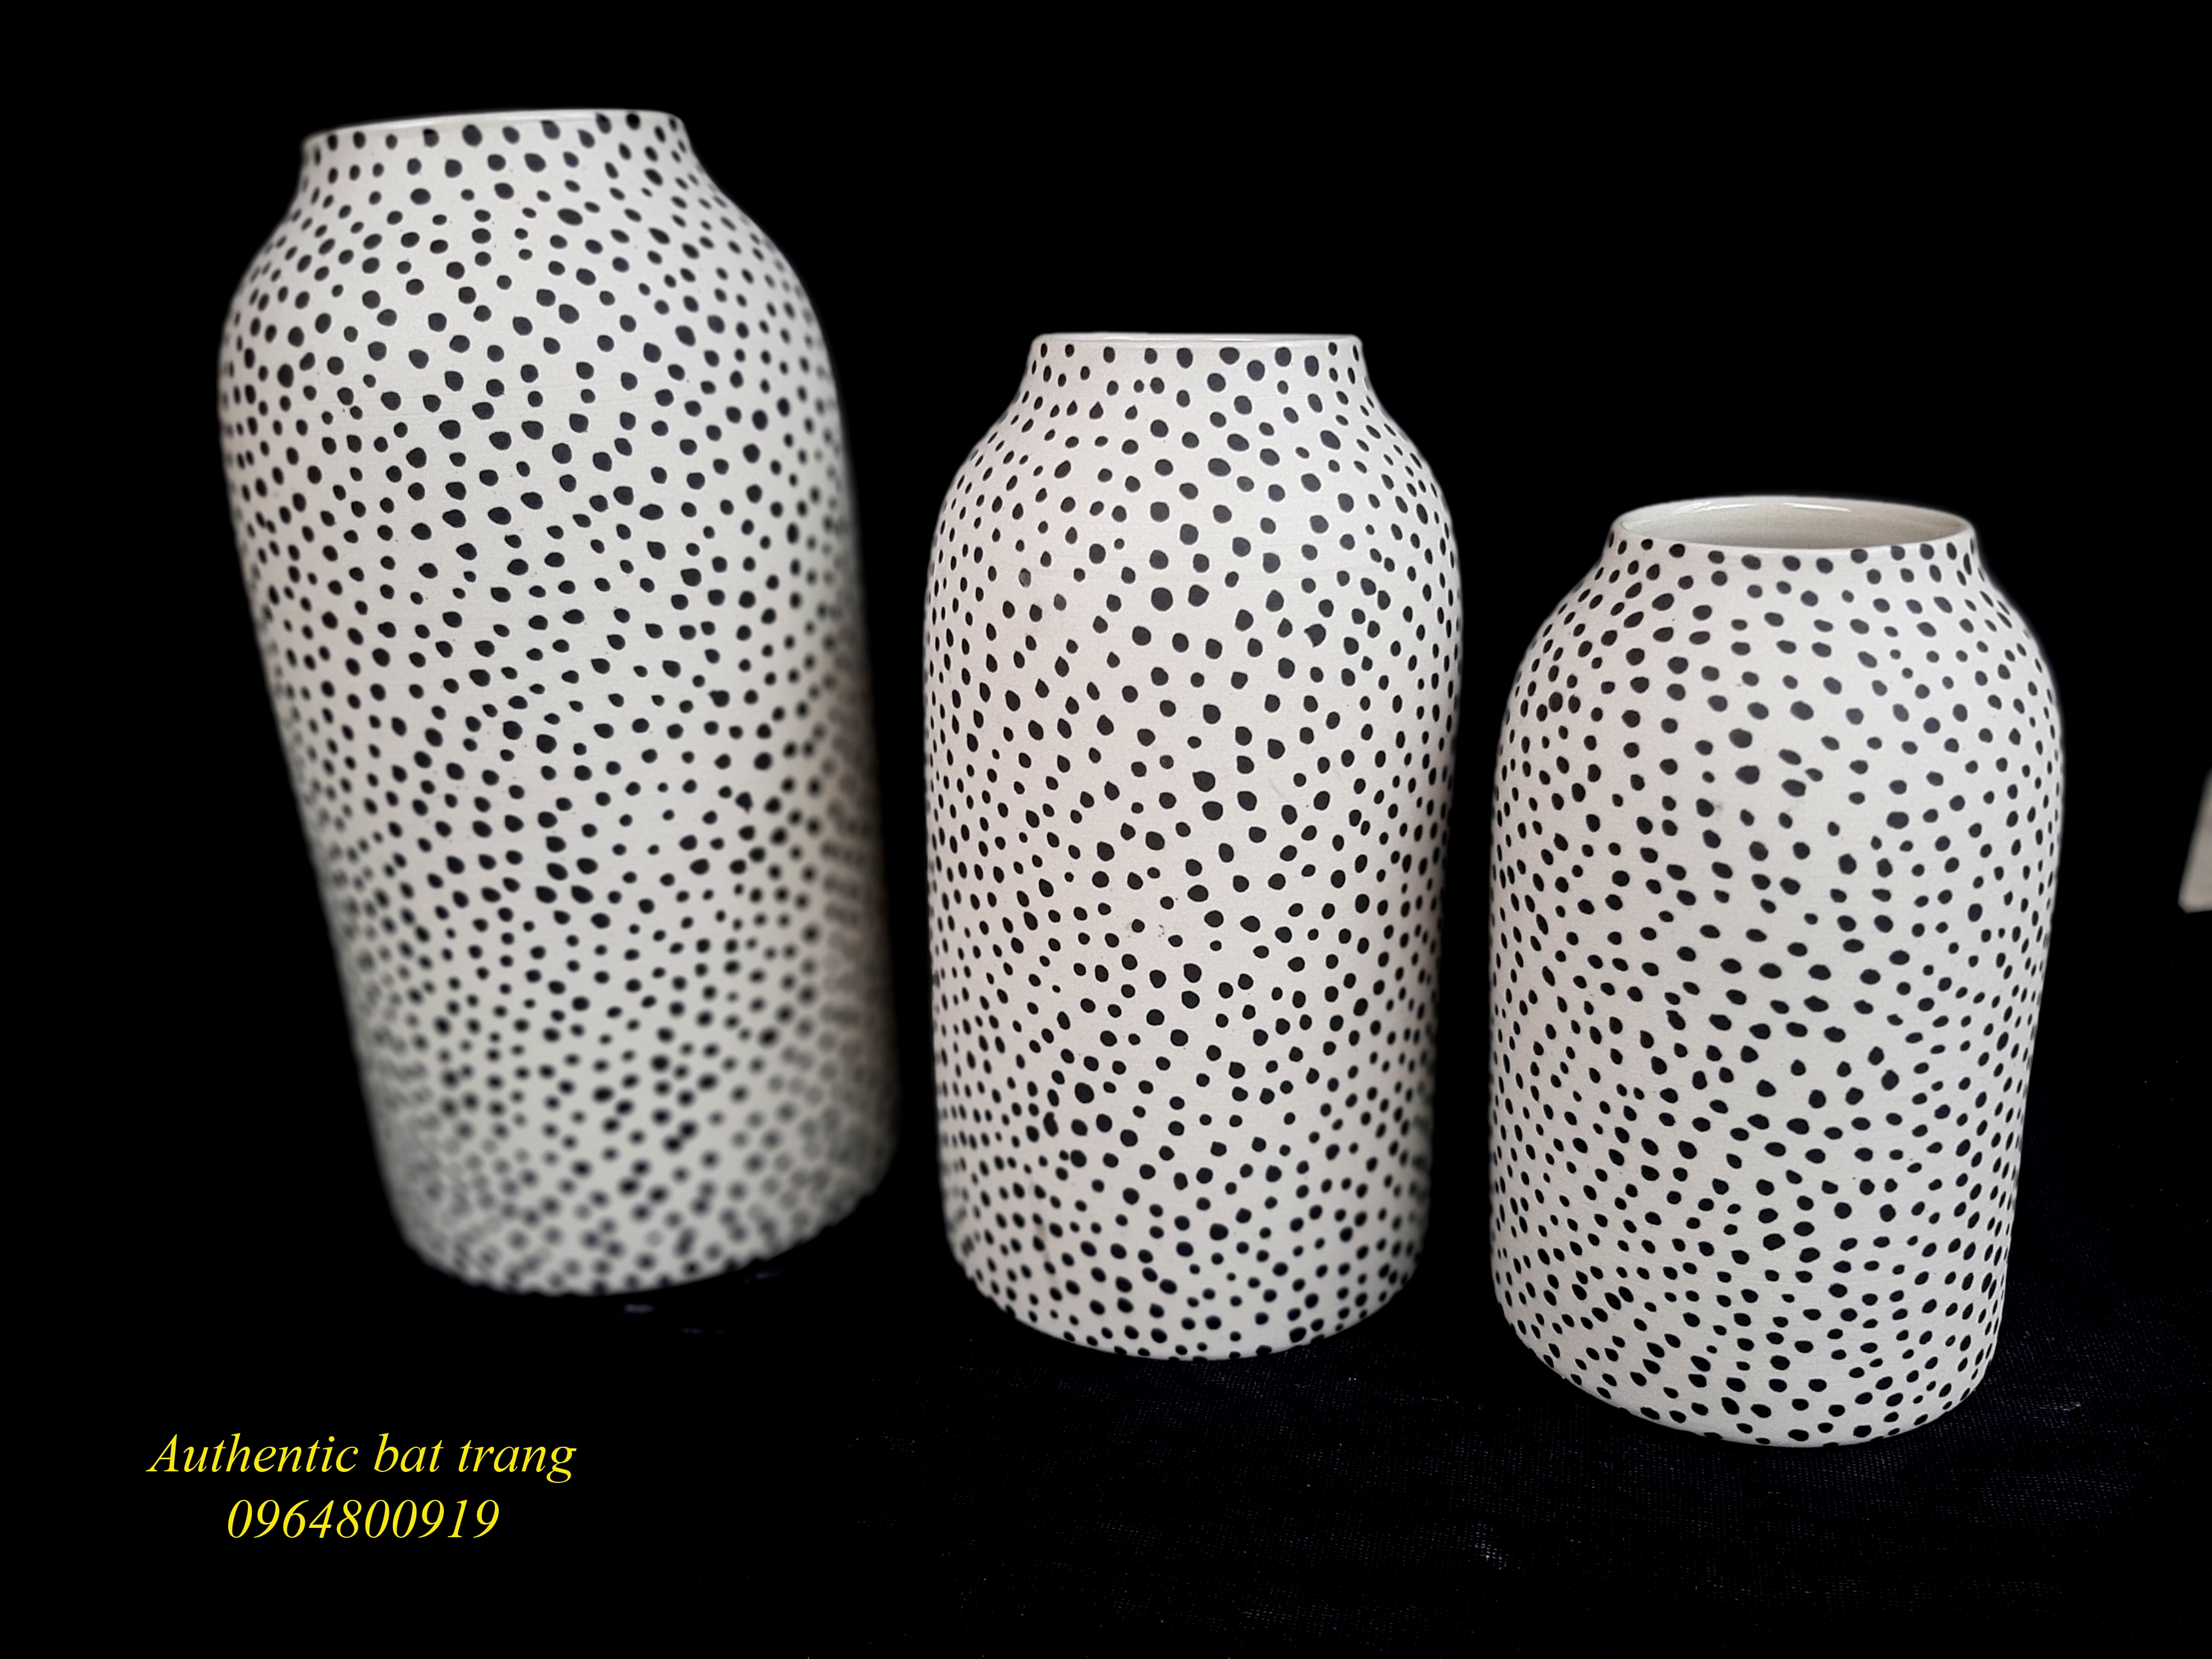 Home decor dots vases/ Bộ bình  trụ chấm bi, trang trí nhà cửa sản phẩm vẽ tay thủ công tai xưởng gốm sứ Authentic bat trang